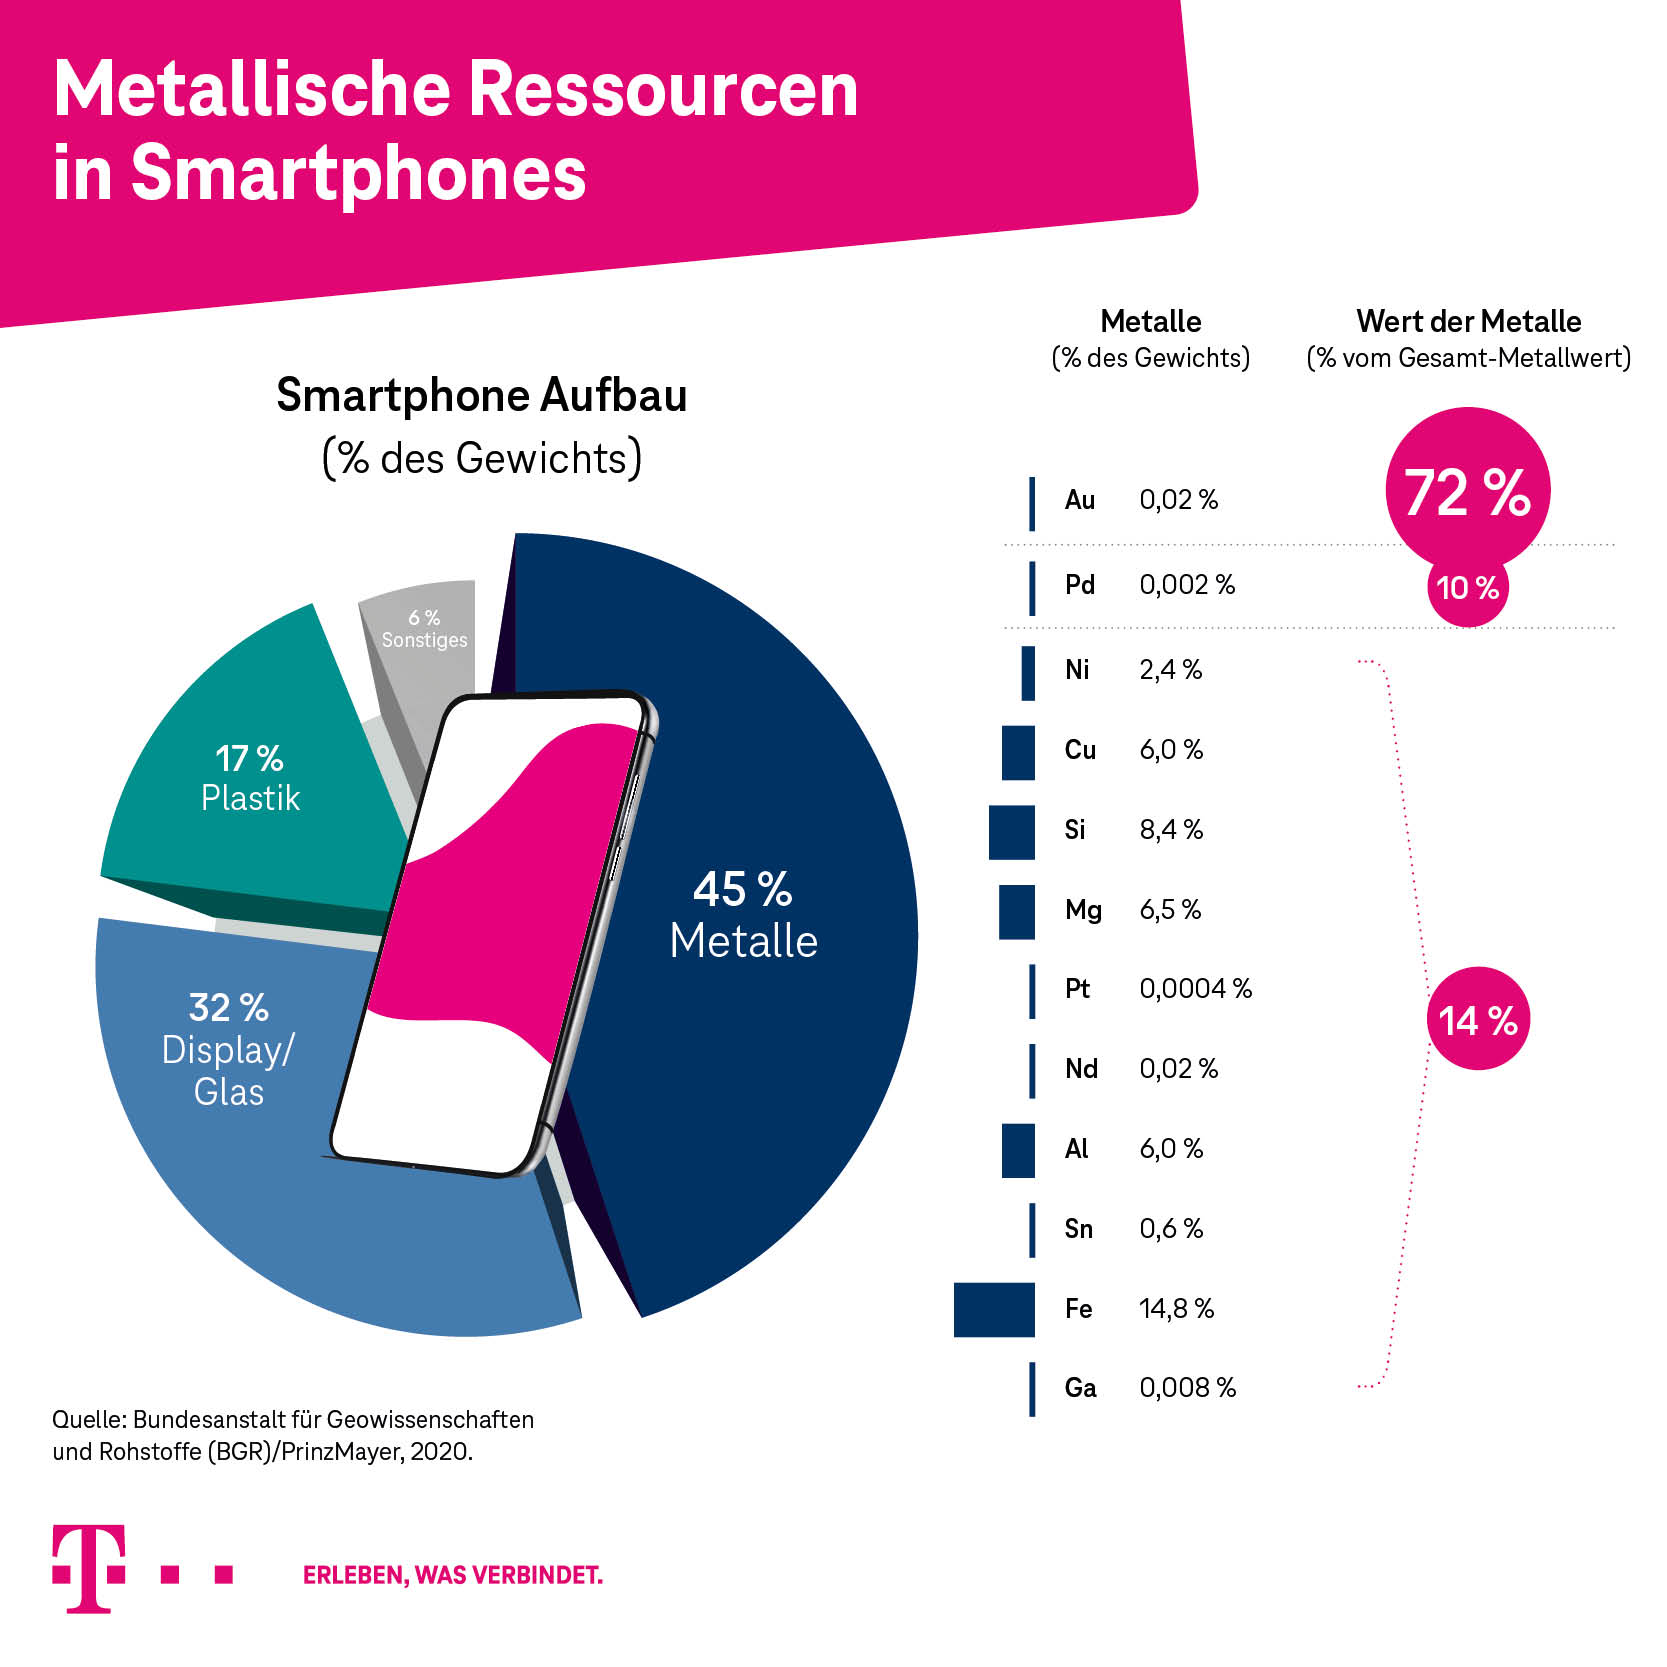 Anteil der metallische Ressourcen in Smartphones